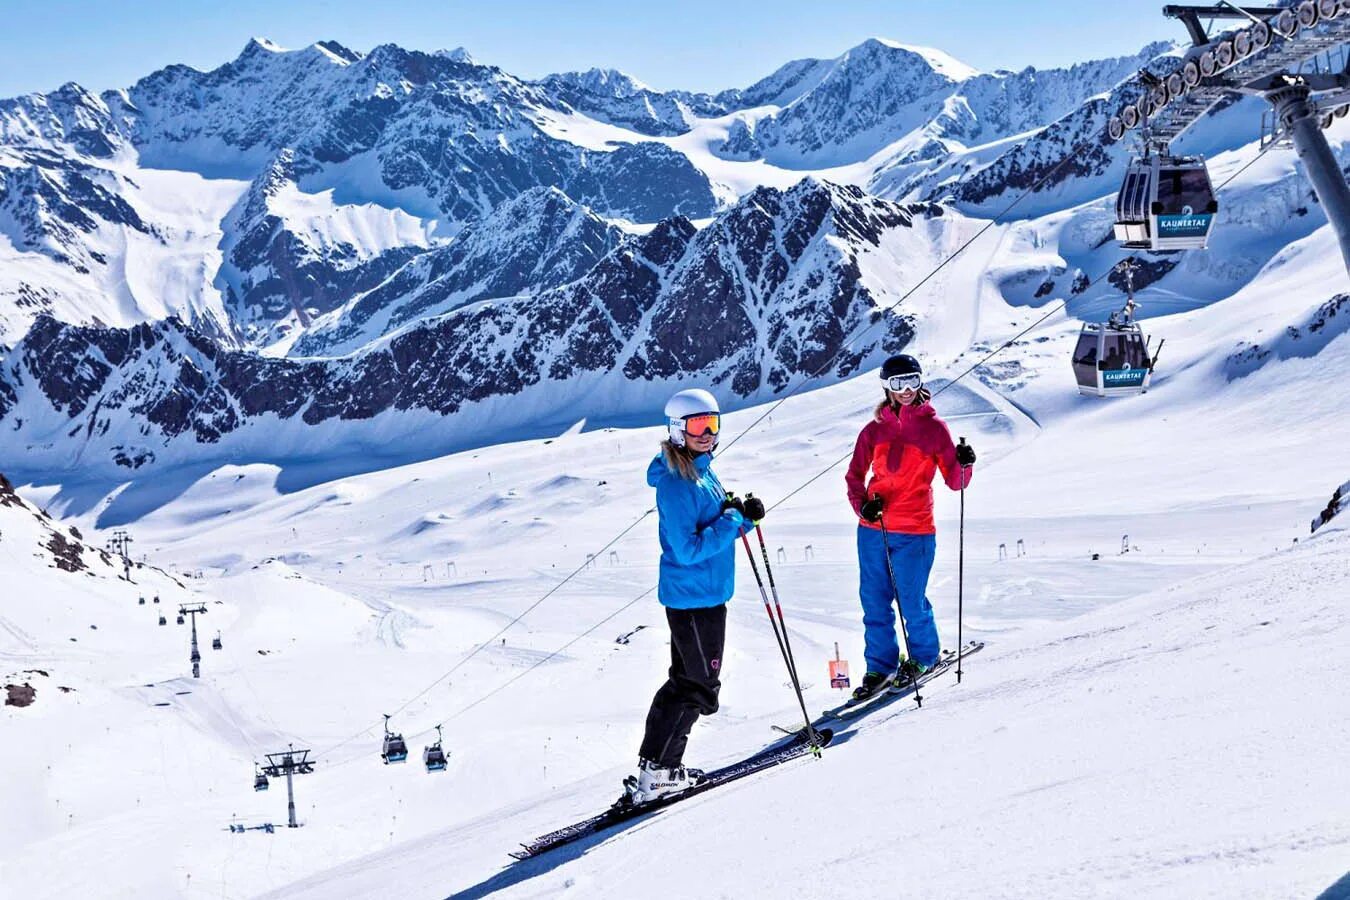 Первые горнолыжные курорты. Лех Австрия горнолыжный курорт. Каунерталь Австрия ледник. Австрия Альпы горнолыжные курорты. Австрия лыжи.